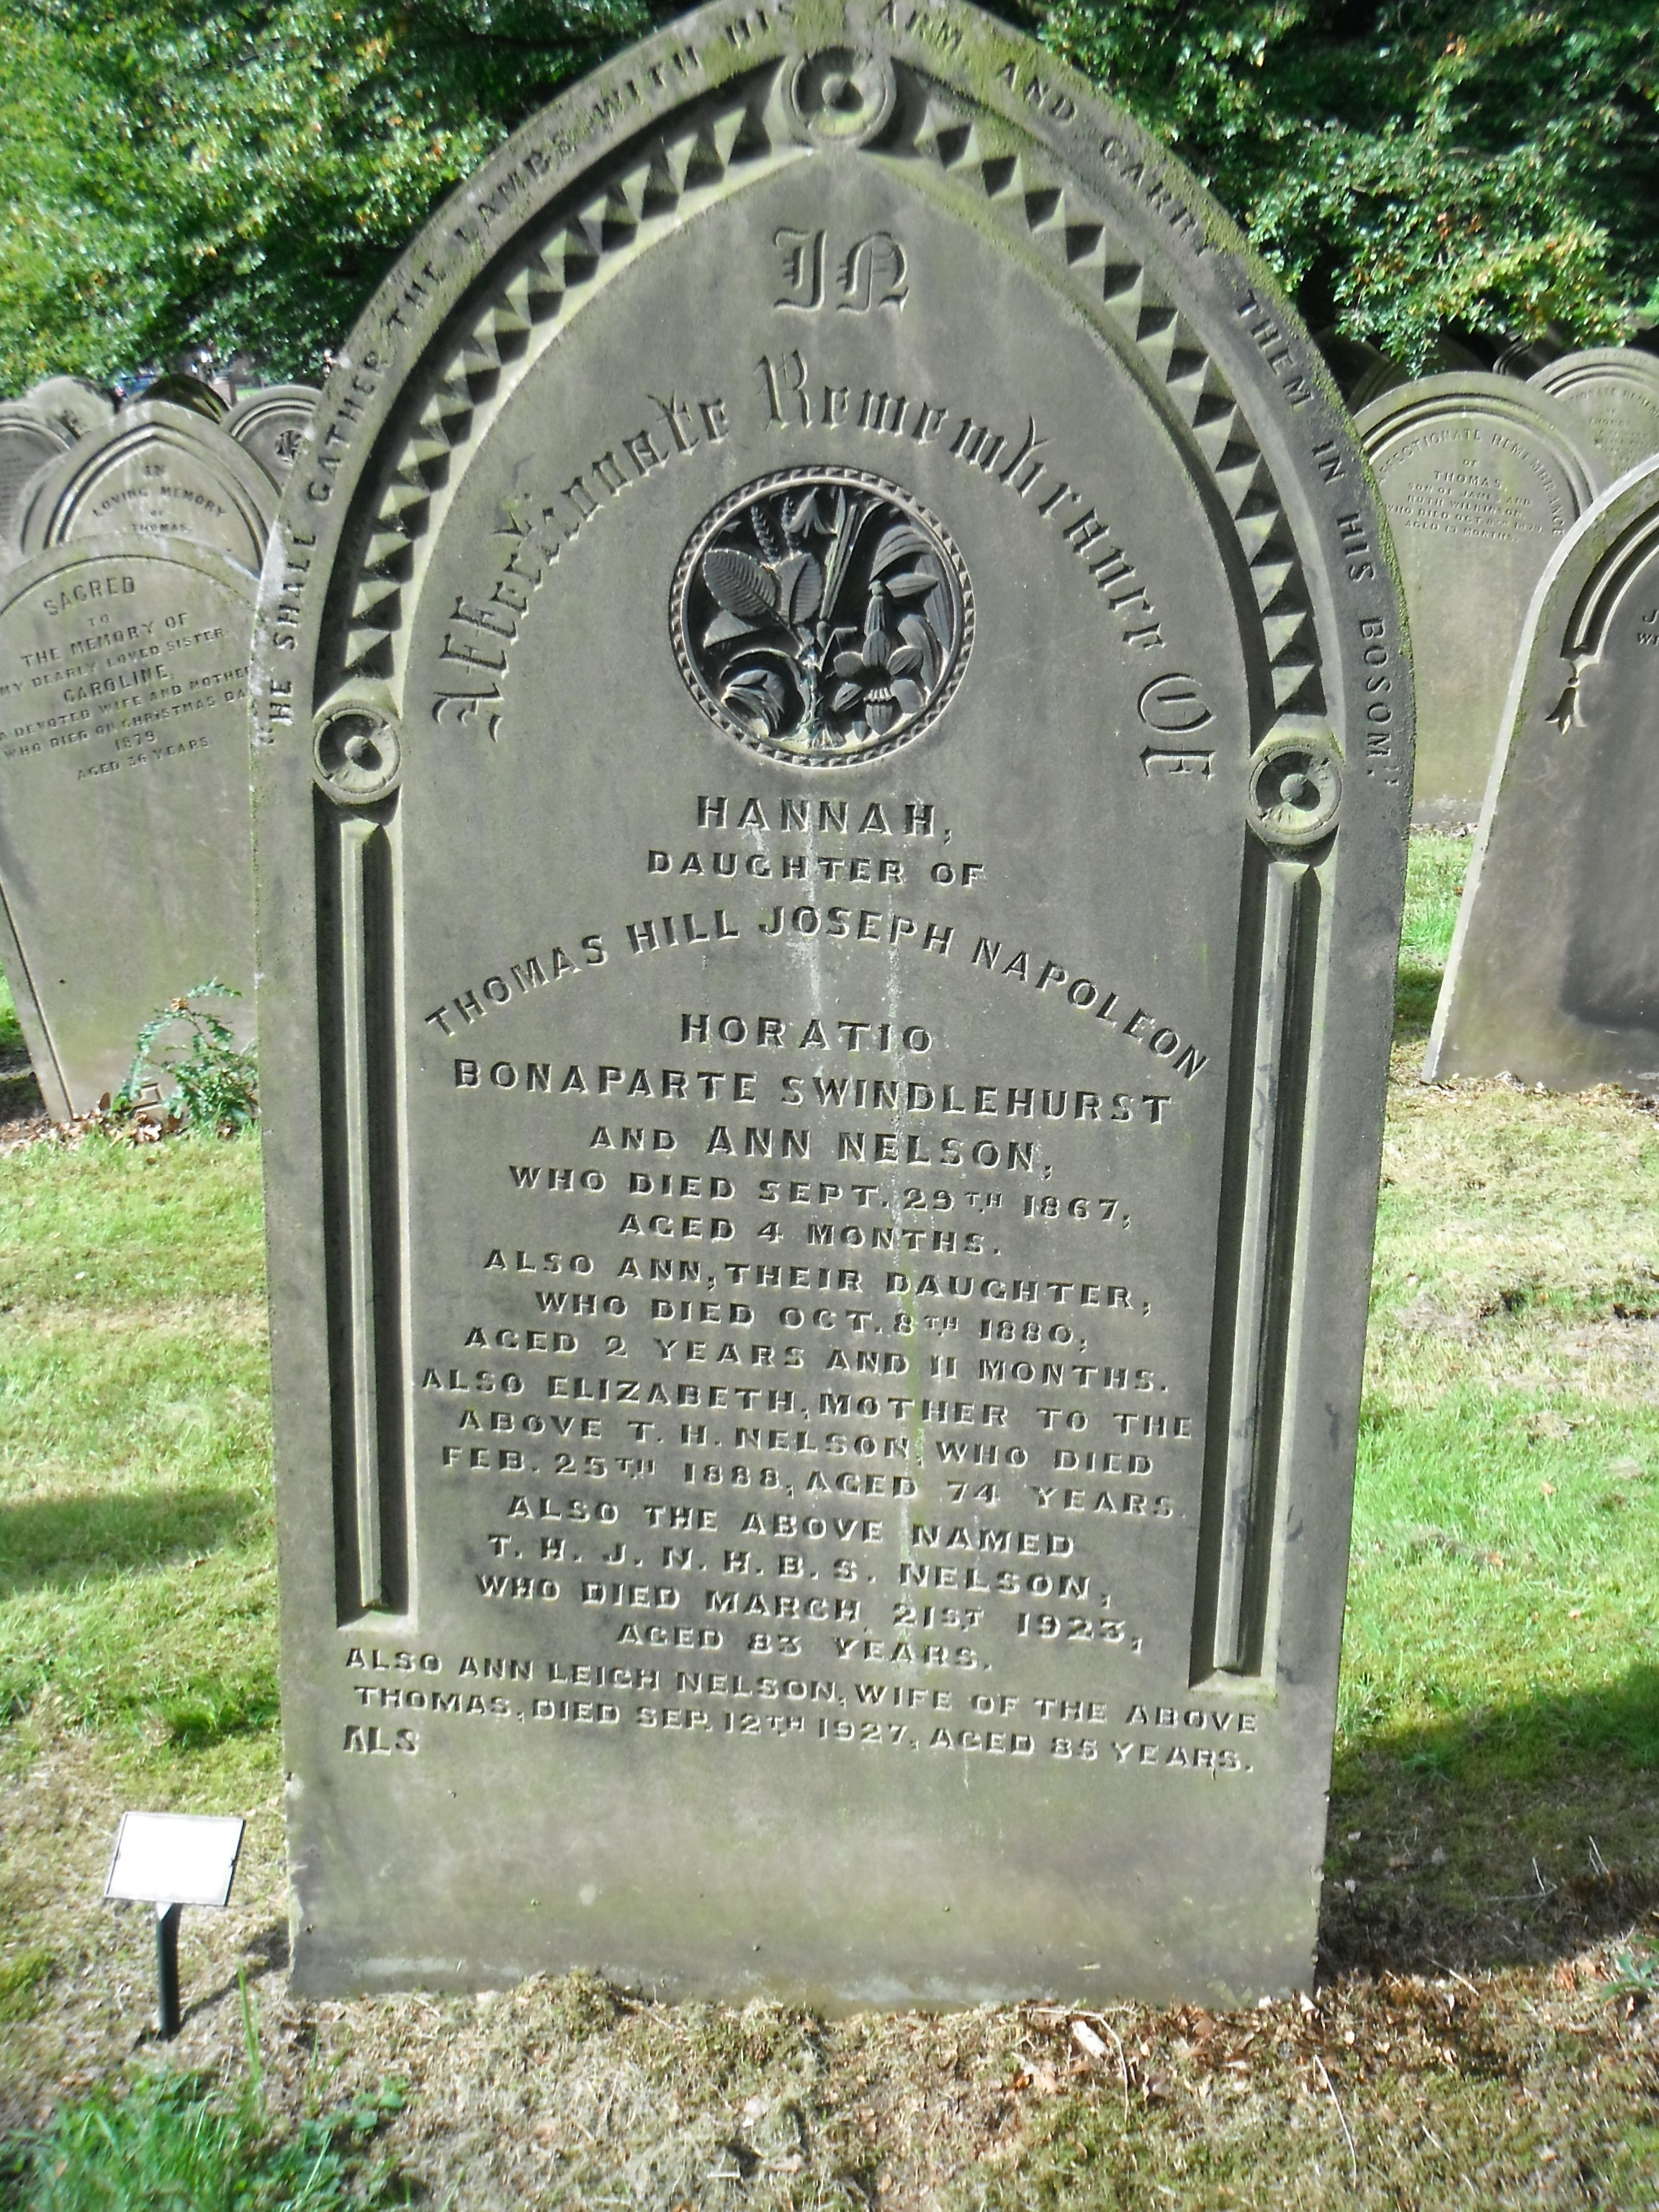 Photo taken by me -  grave marker - Preston, Lancashire